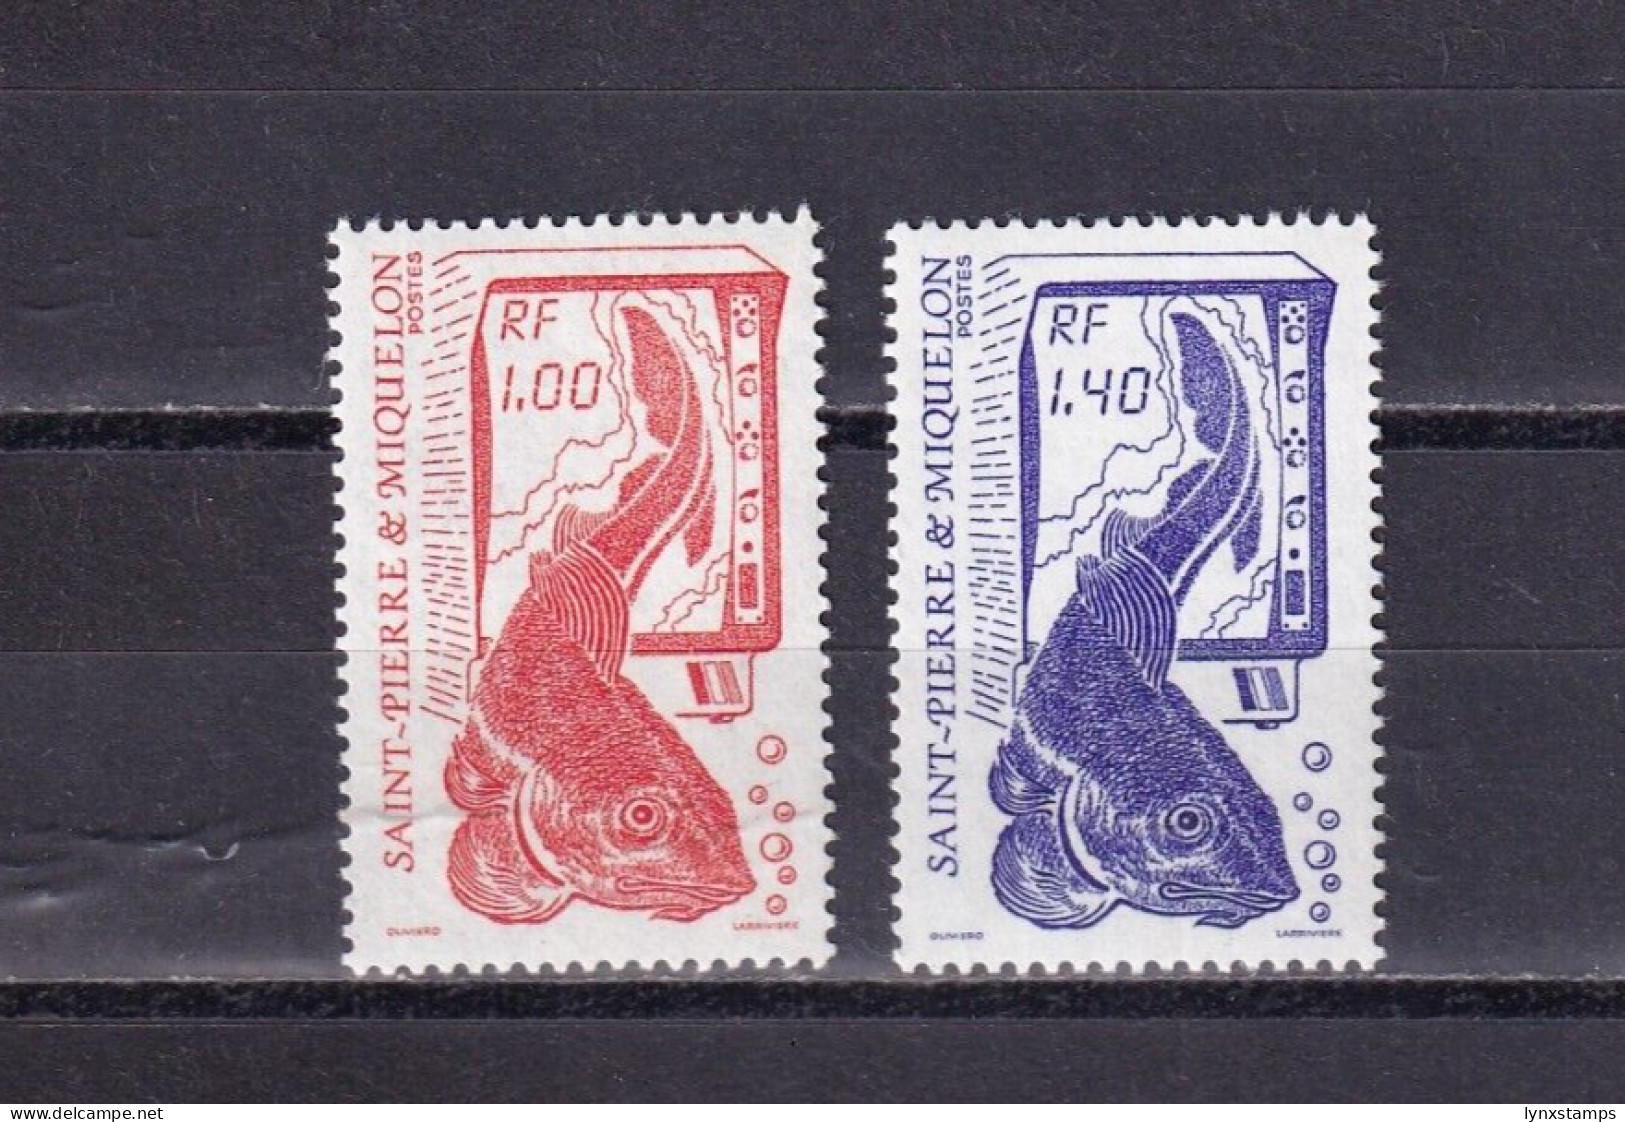 SA03 St Pierre Et Miquelon France 1986 Fishing Mint Stamps - Ongebruikt